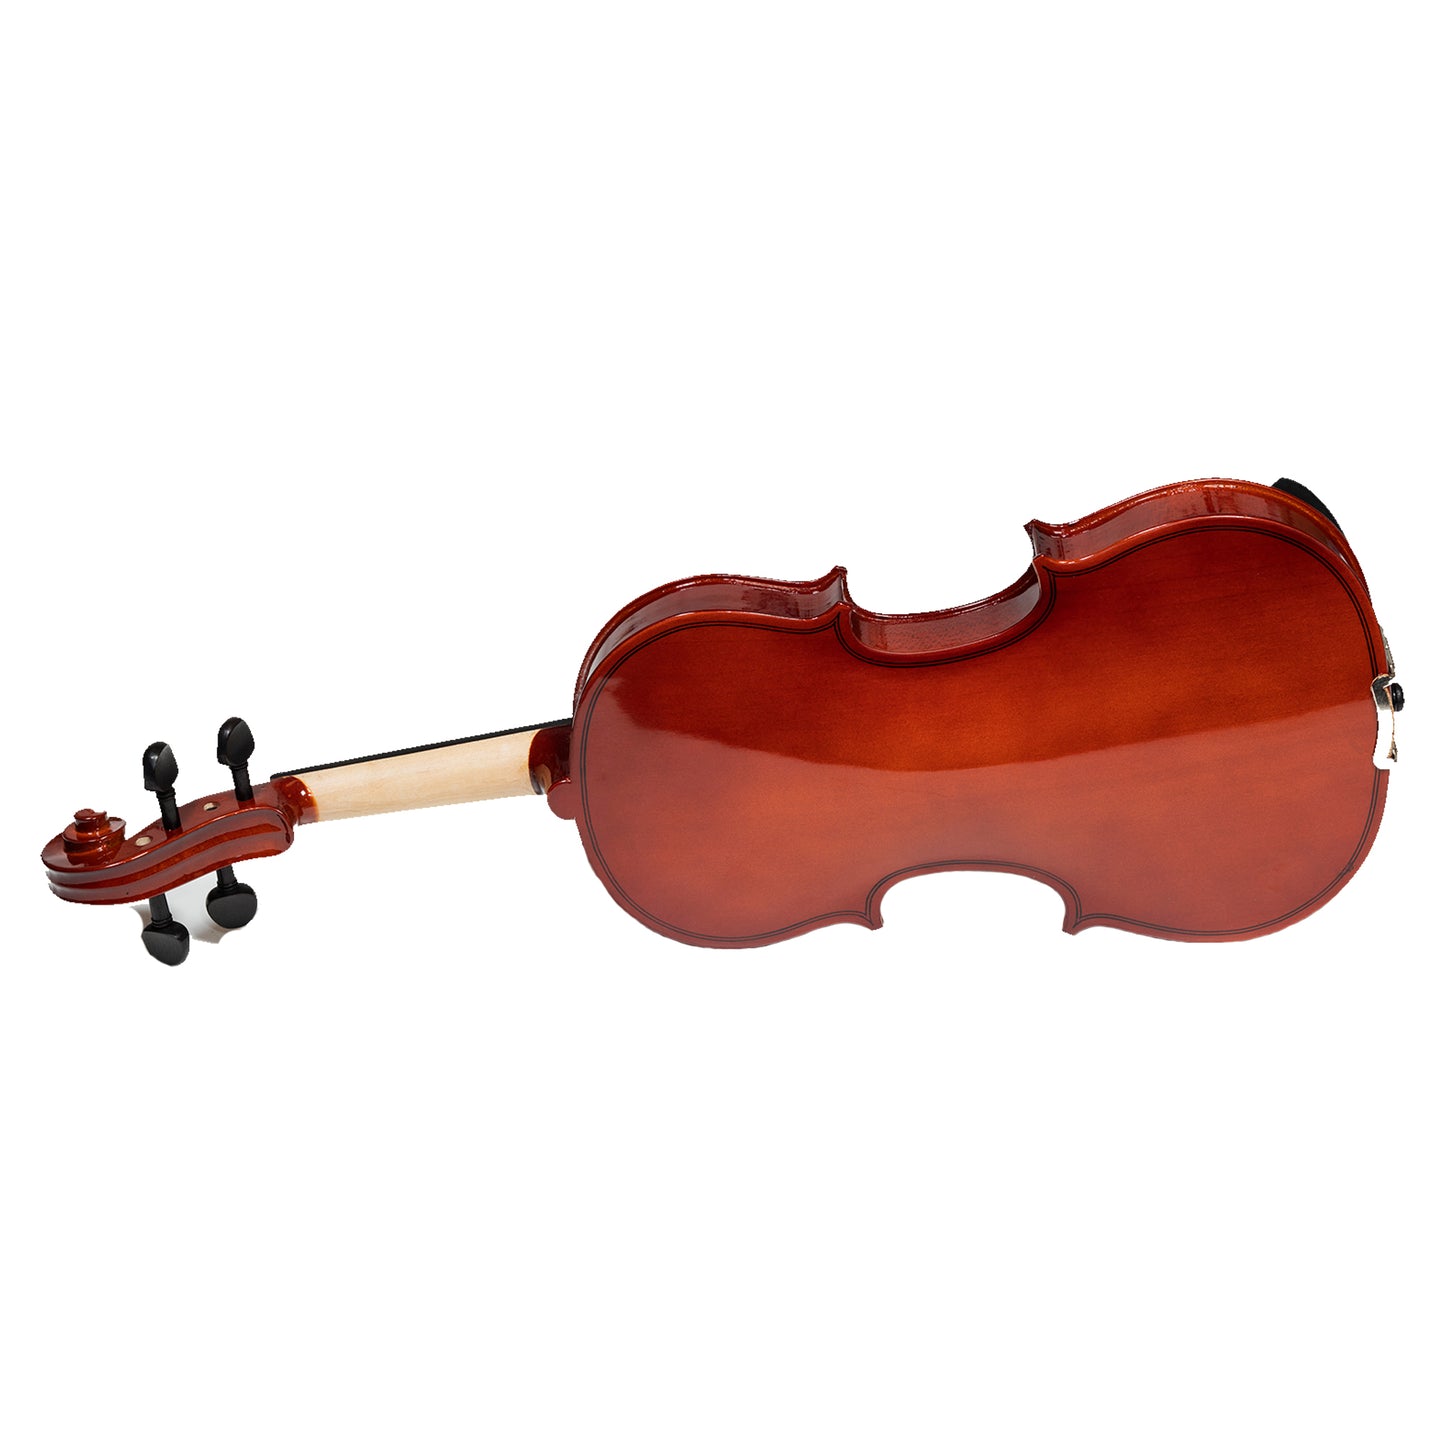 Heartland 1-2 Laminated Student Violin